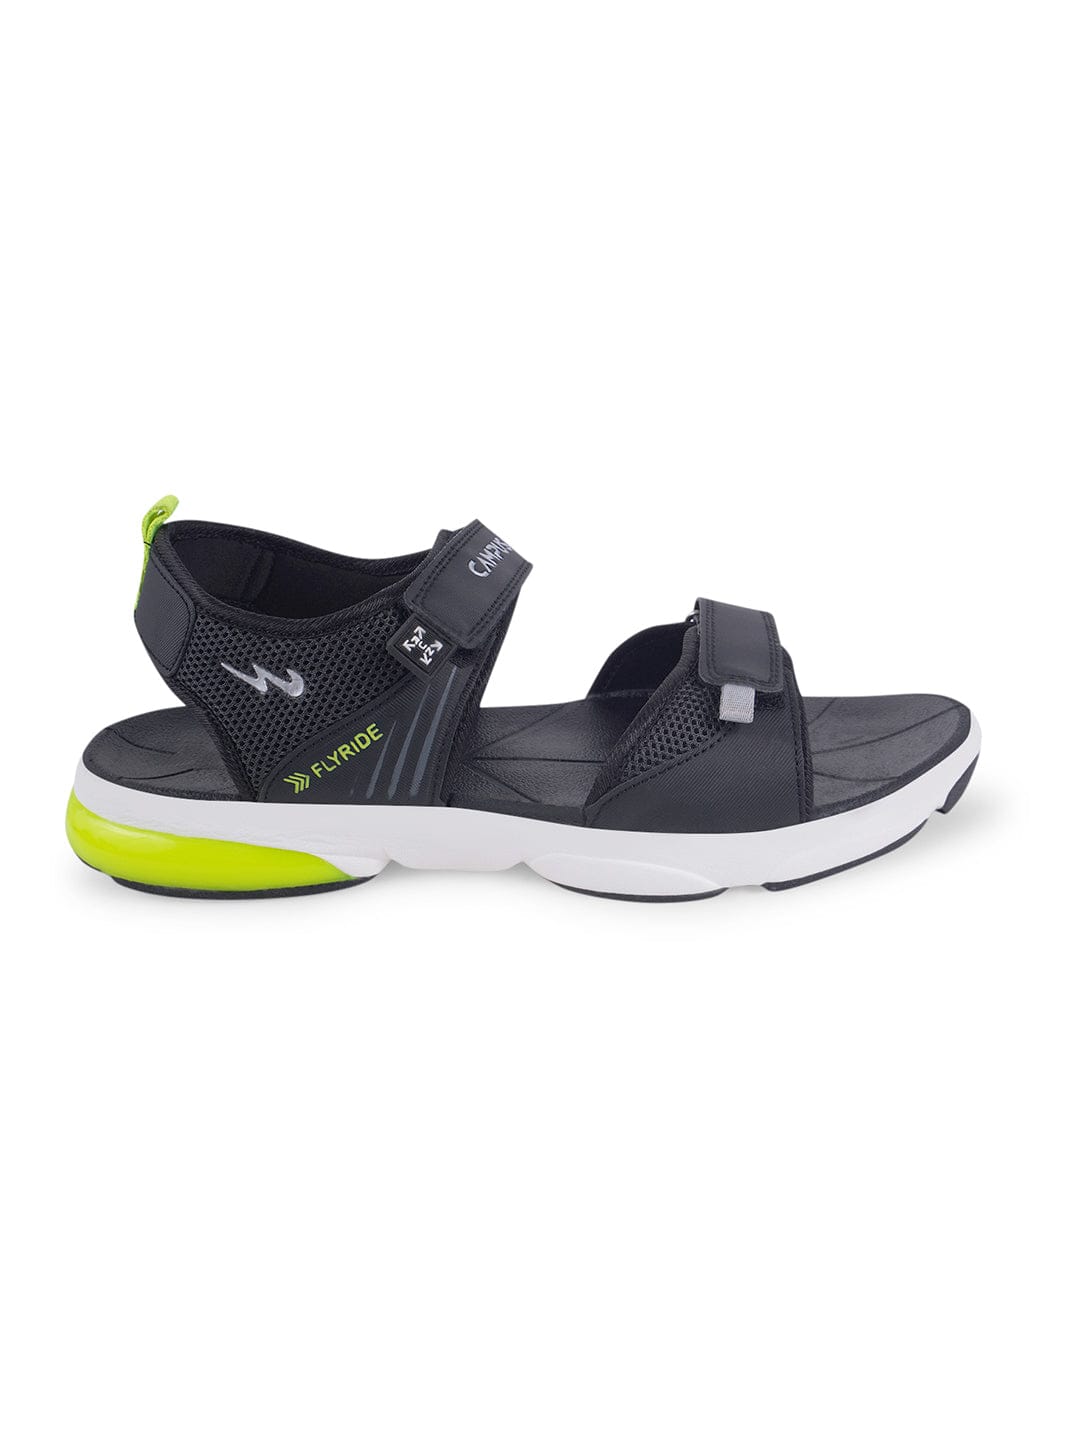 Buy Sandals For Men: Gc-22107-Blk-Sil | Campus Shoes